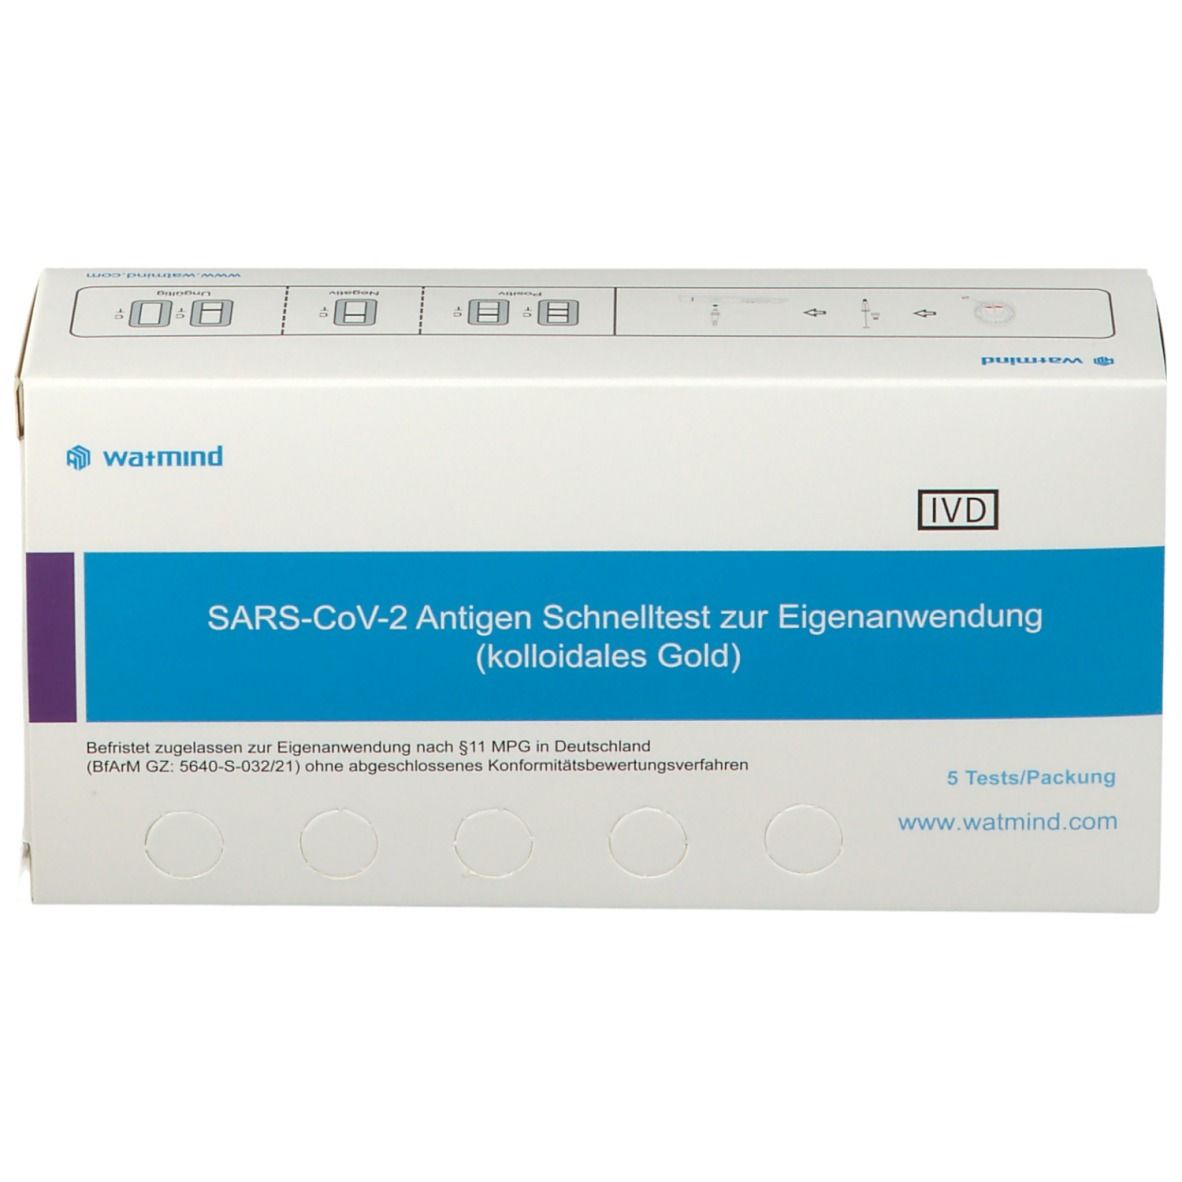 watmind SARS-CoV-2 Antigen Lolly-Schnelltest zur Eigenanwendung